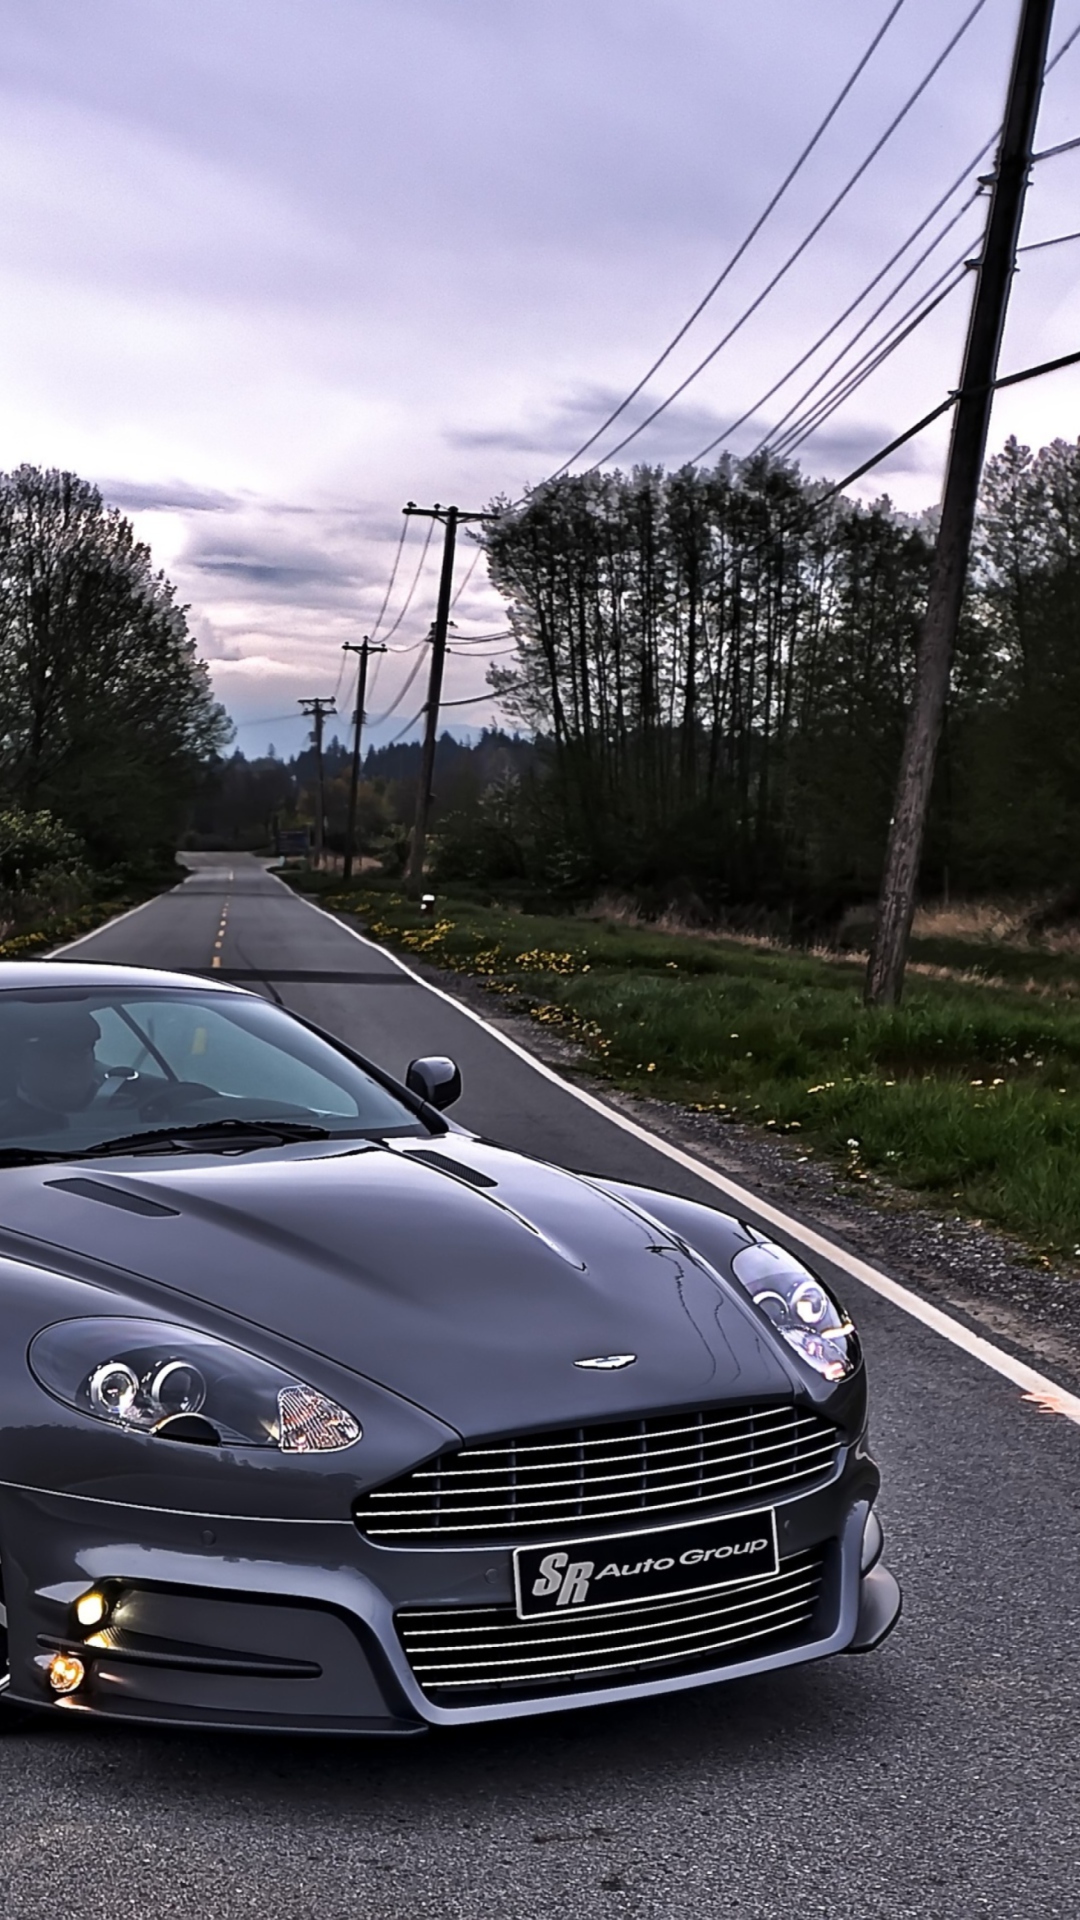 Fondo de pantalla Aston Martin 1080x1920